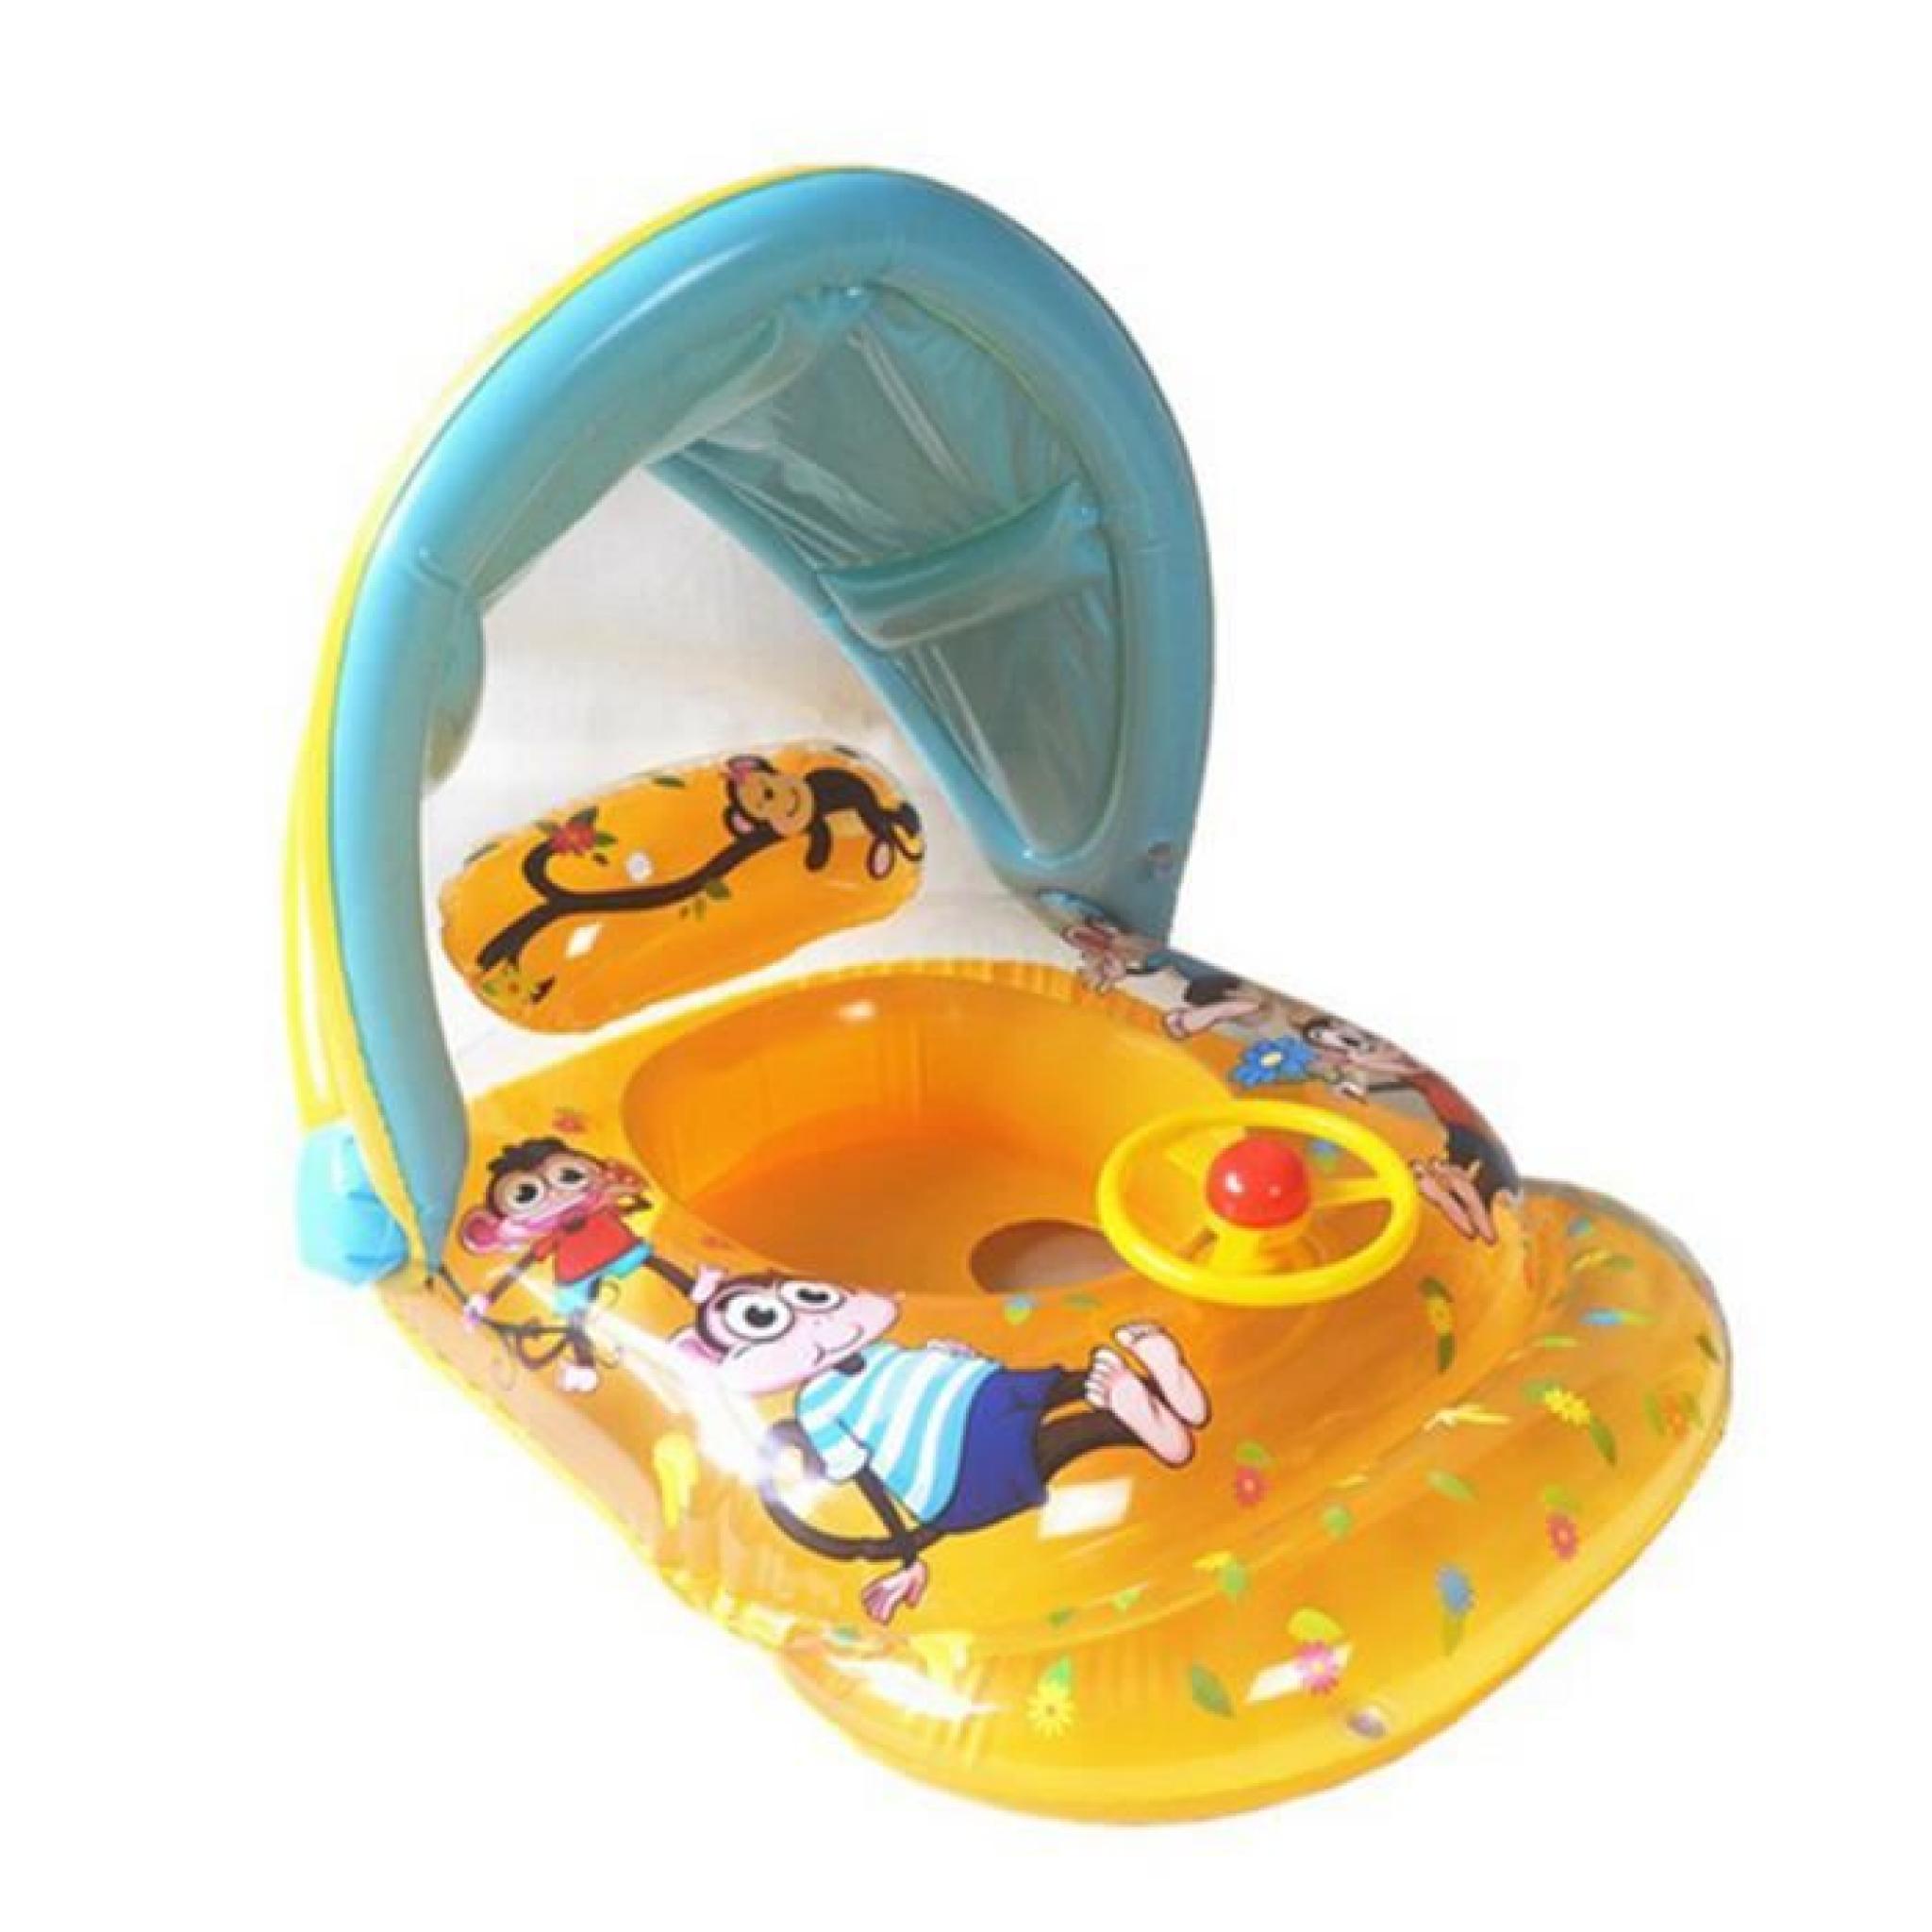 siège bouée gonflable mignonbébé avec auvents jaune pour piscine plage mer